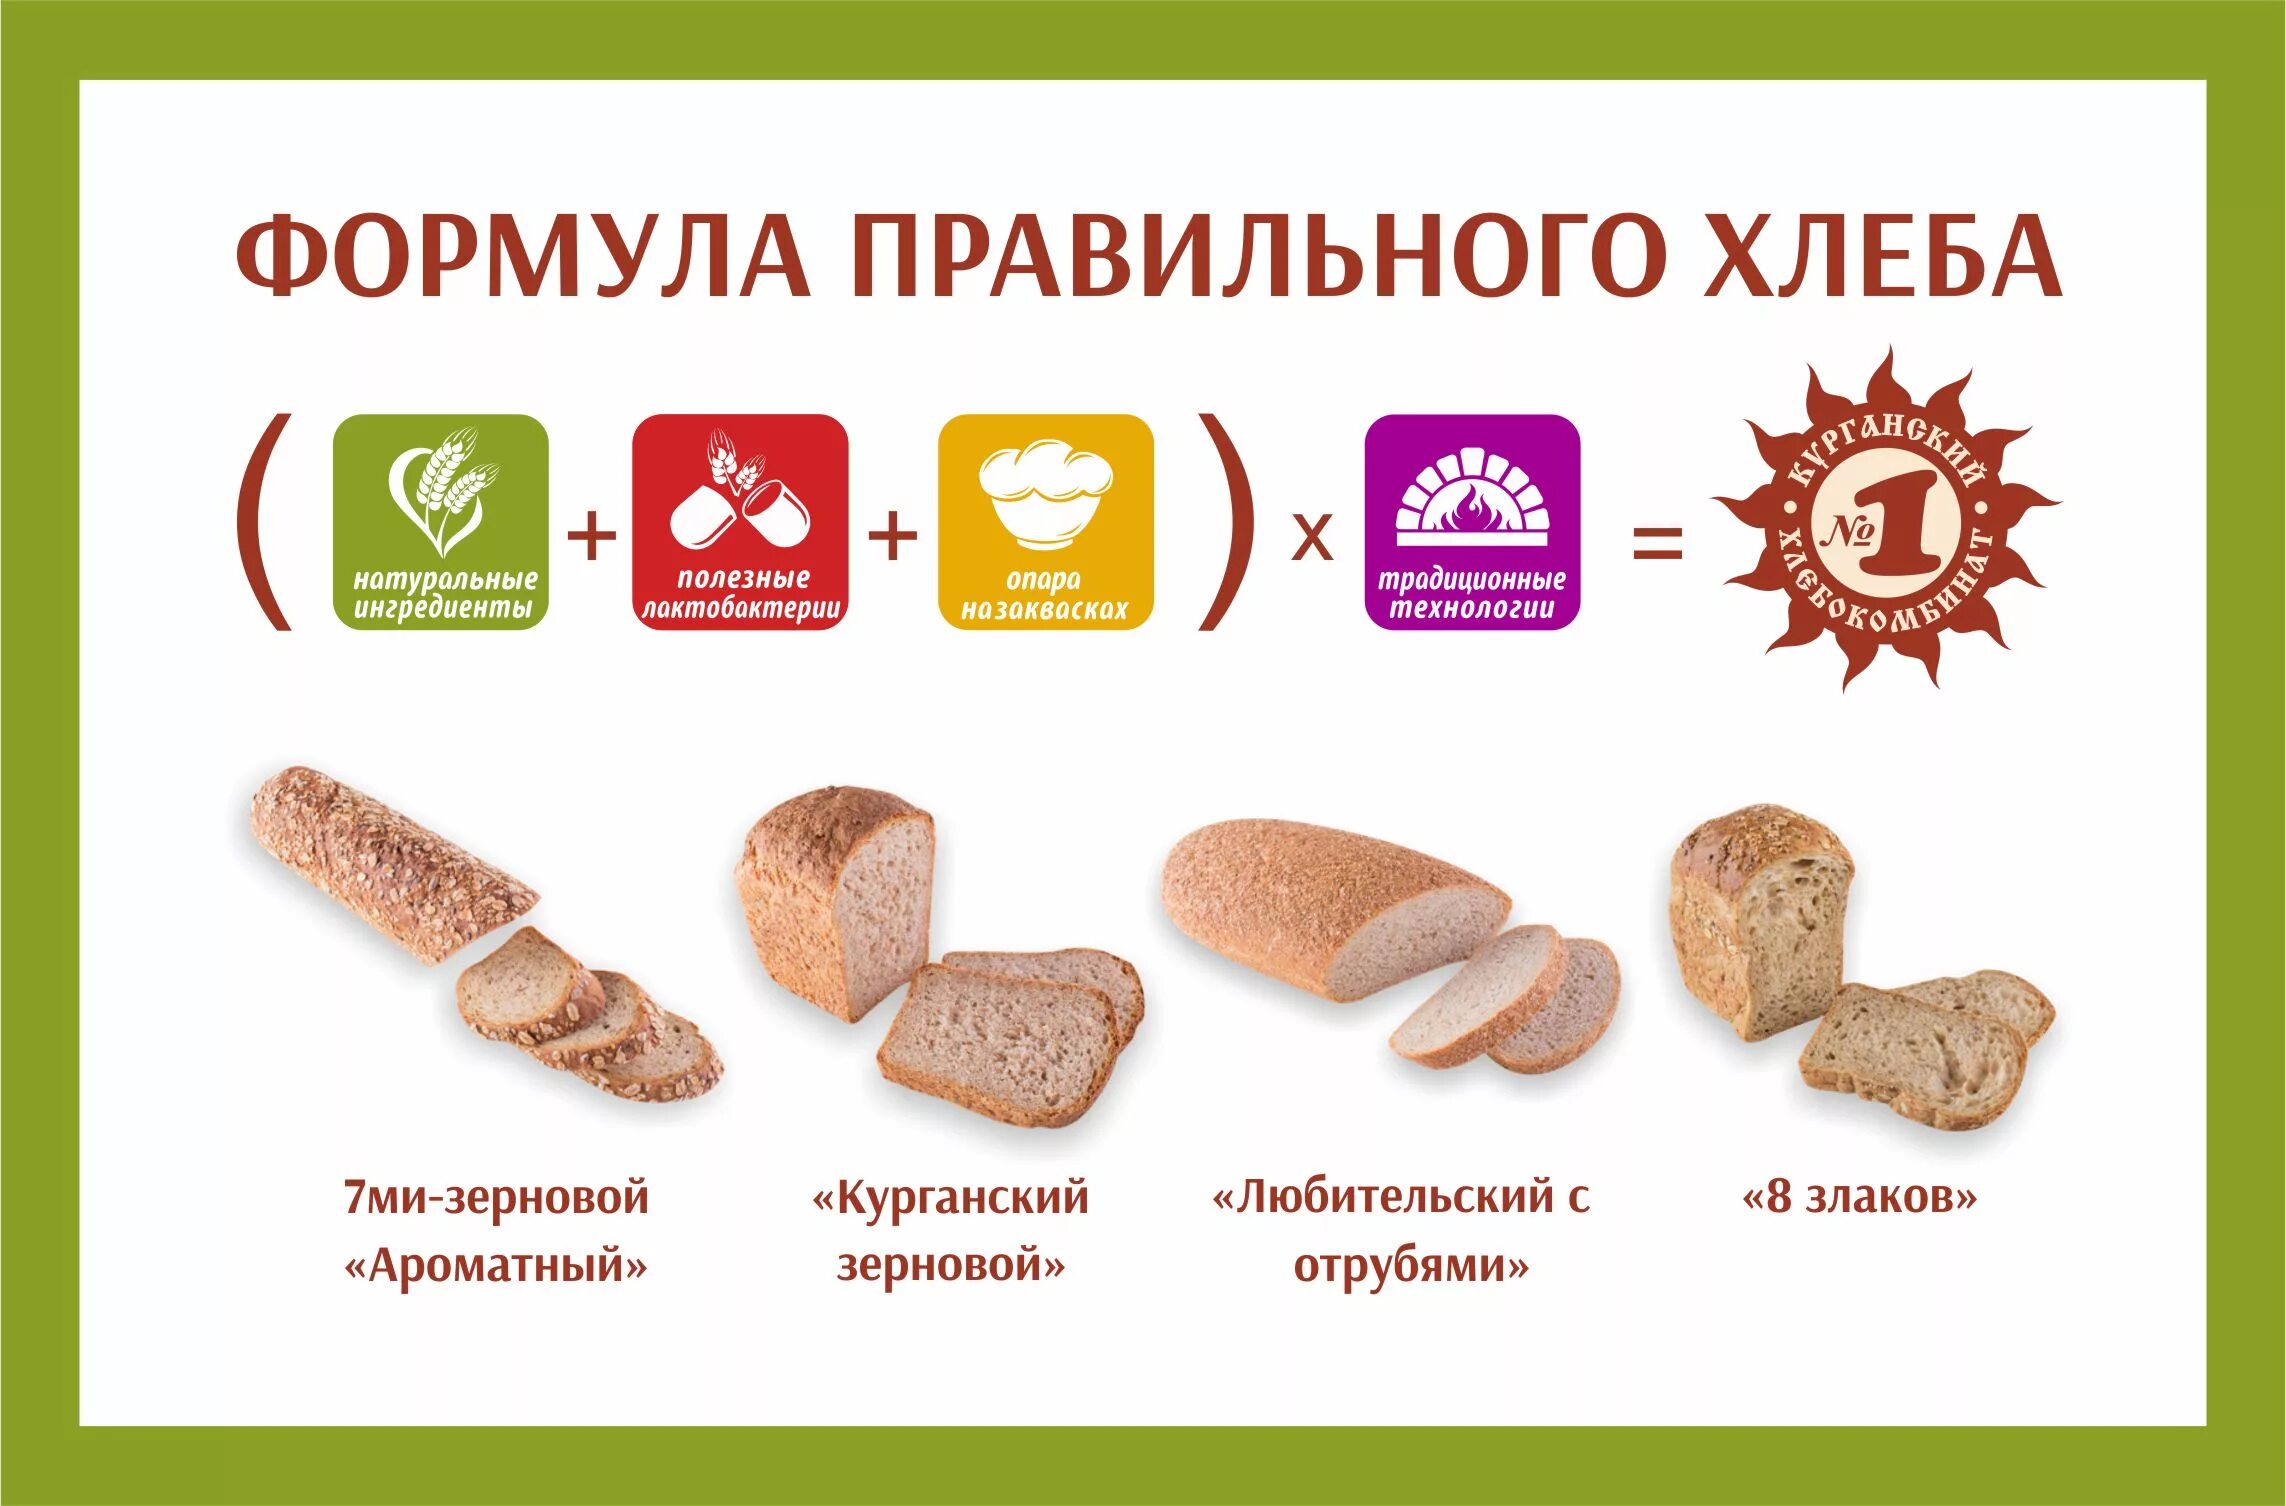 Хлеб при повышенном сахаре. Полезные хлебобулочные изделия. Хлеб полезный для здоровья. Польза хлеба. Реклама хлеба.